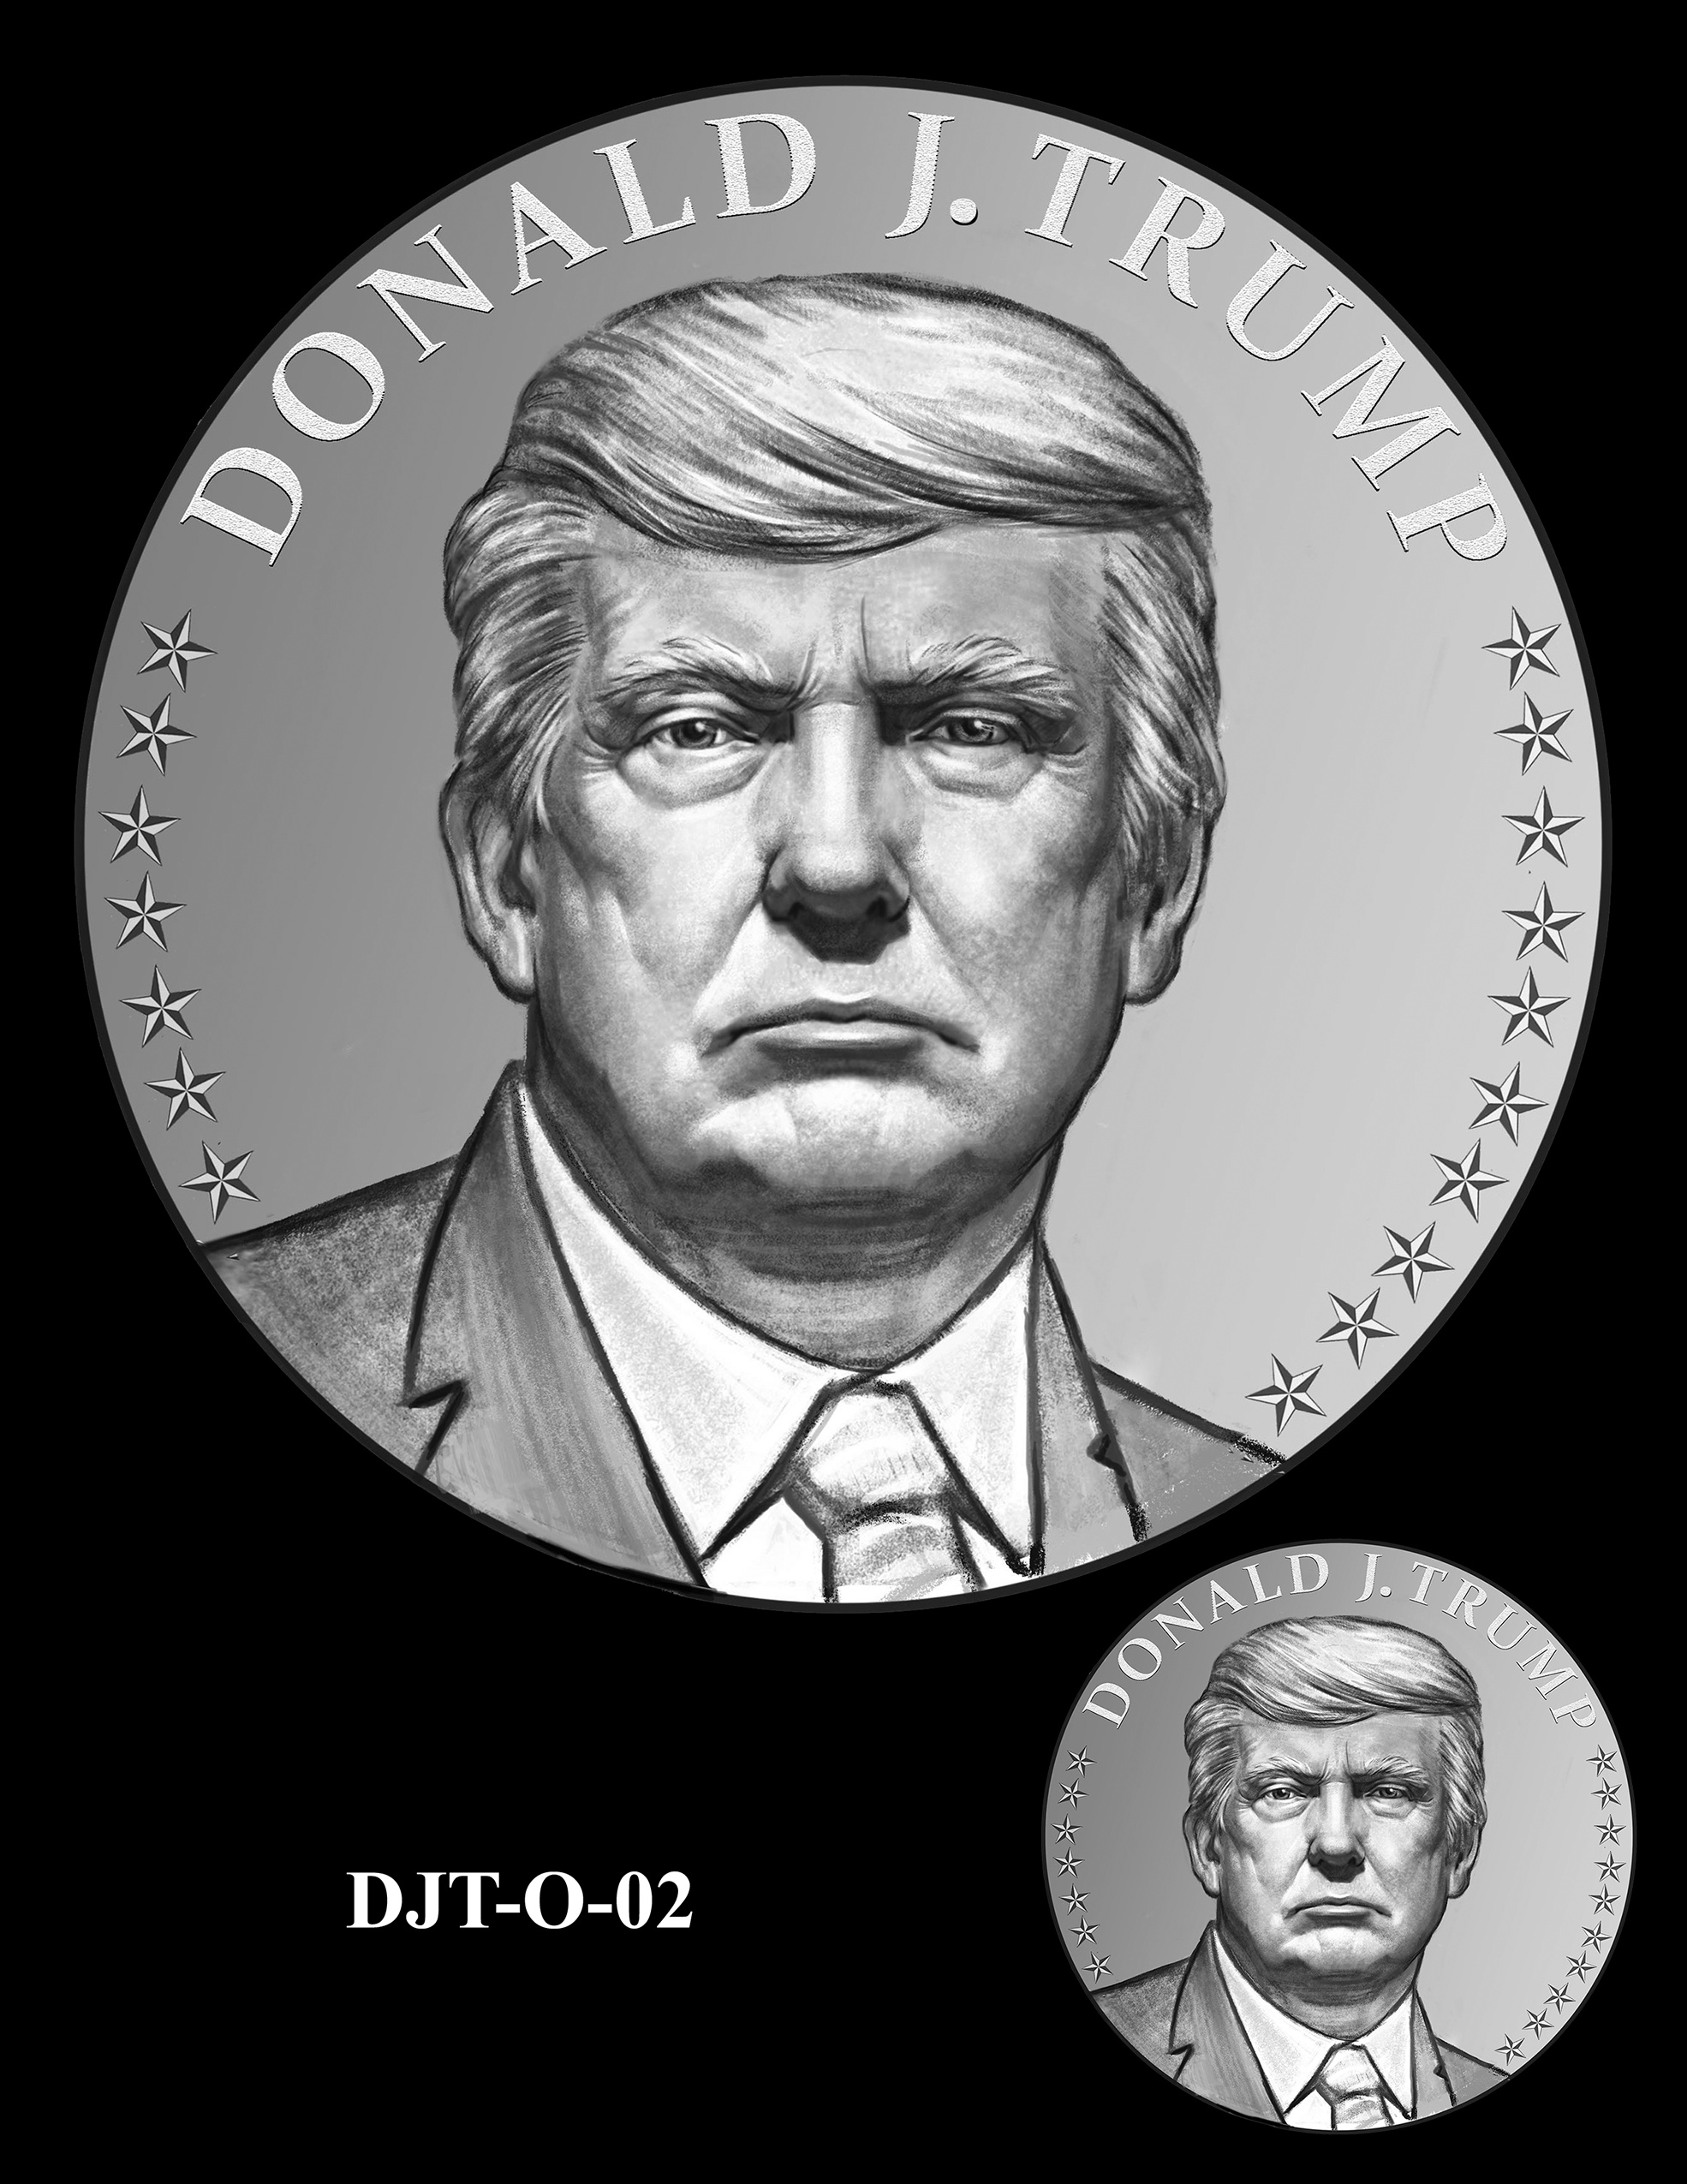 DJT-O-02 -- Donald J. Trump Presidential Medal